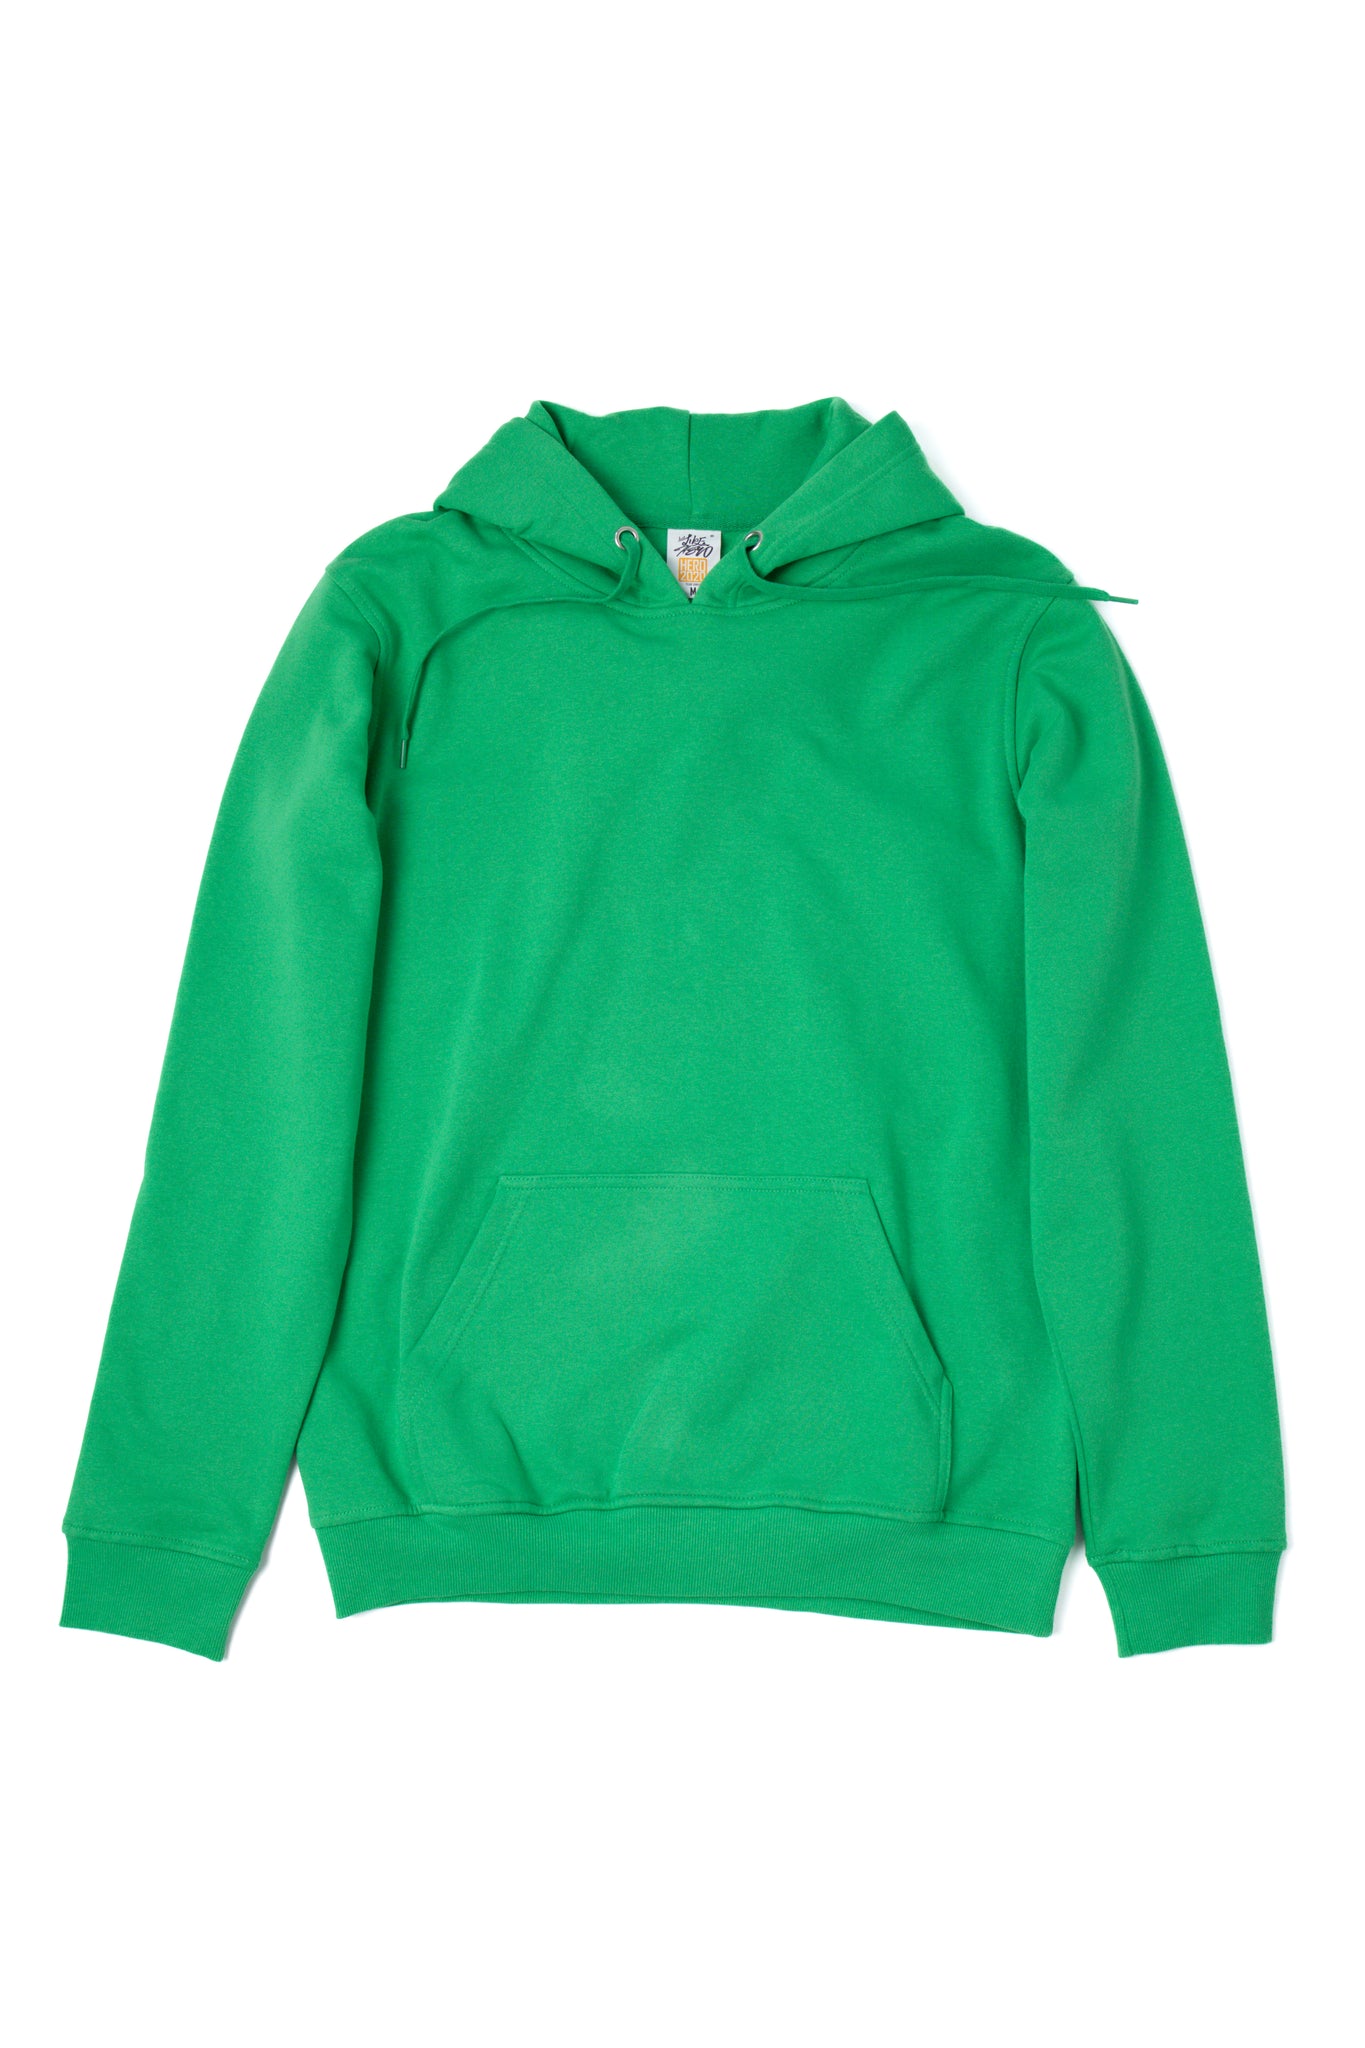 Wholesale Blank Hoodies Sweatshirts Apparel In Canada